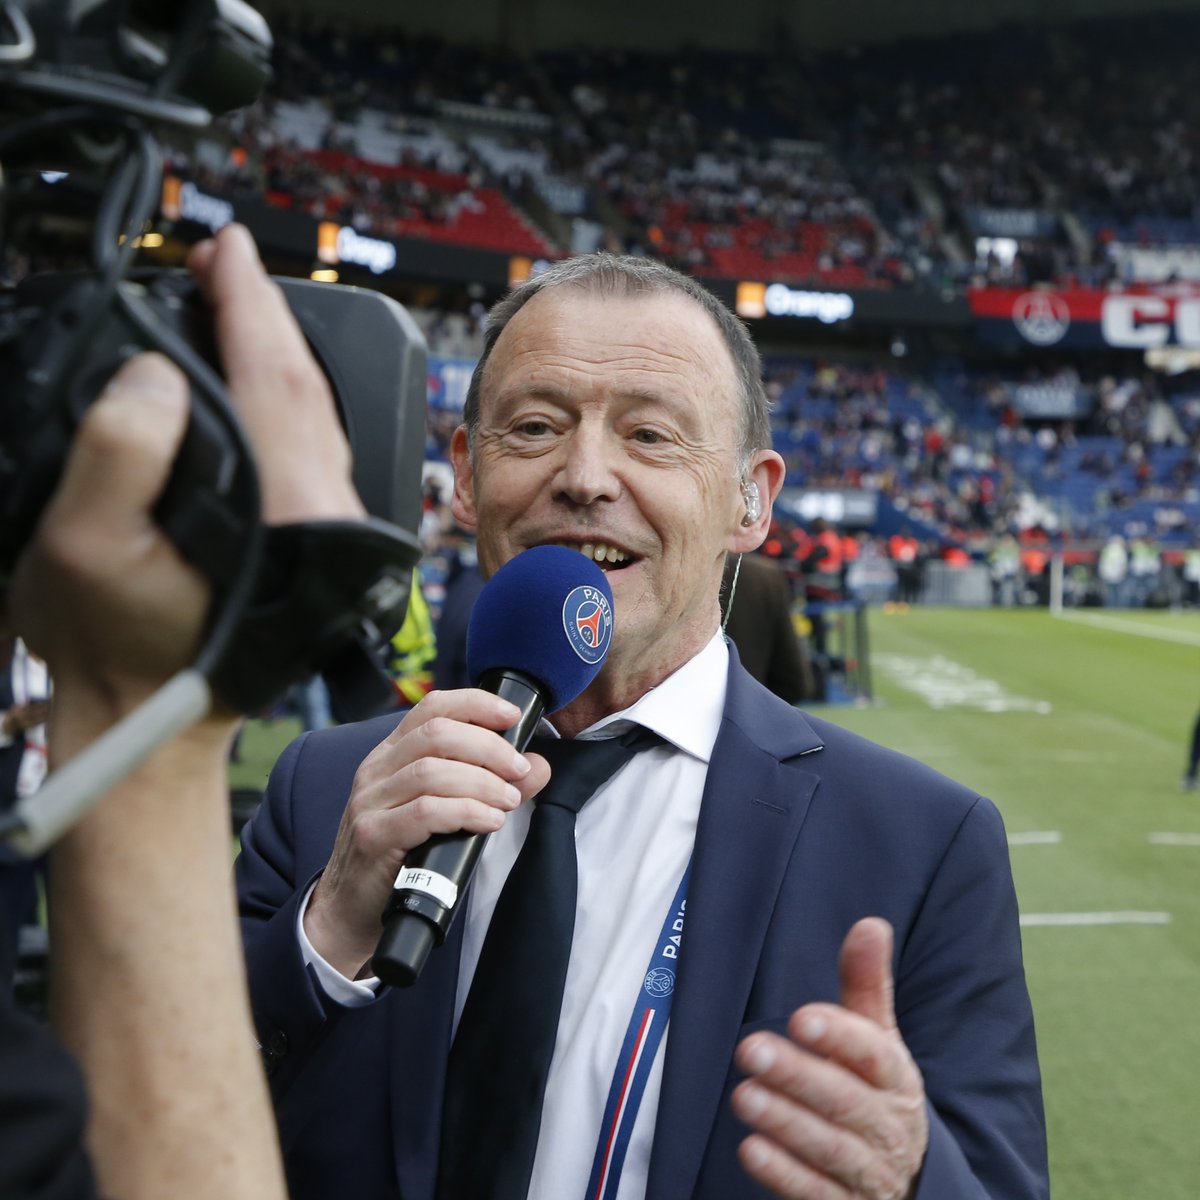 La voix du Paris Saint-Germain prend sa retraite : merci Michel Montana ! ❤️💙